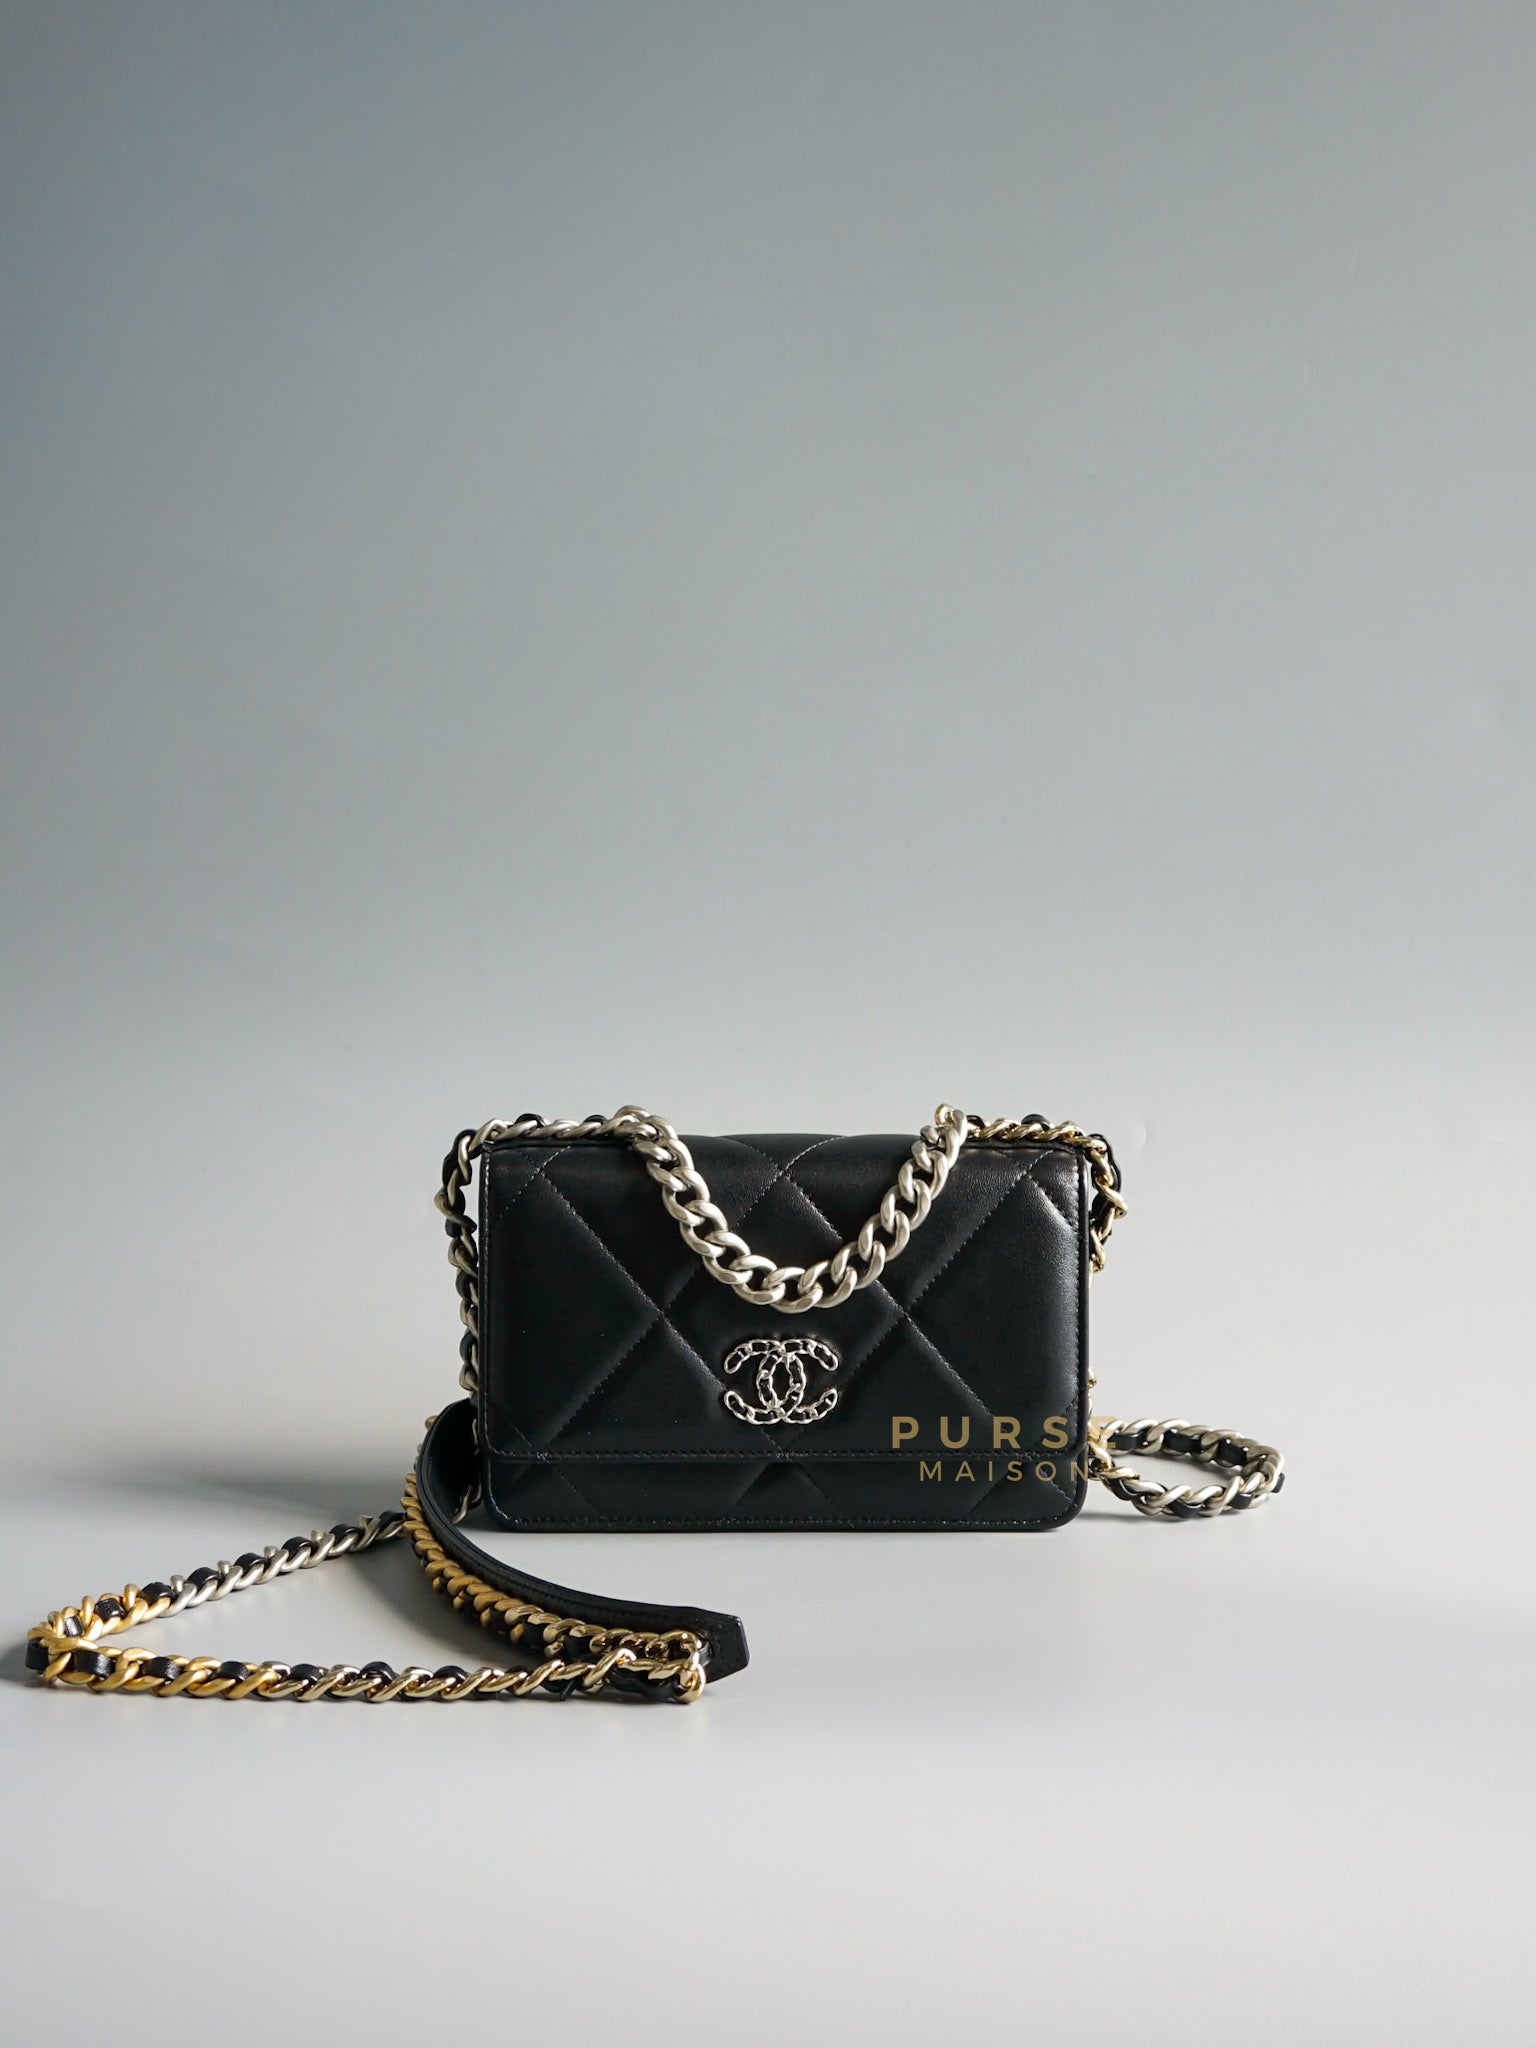 19 Wallet on Chain in Black Lambskin & Mix Hardware (Microchip) | Purse Maison Luxury Bags Shop